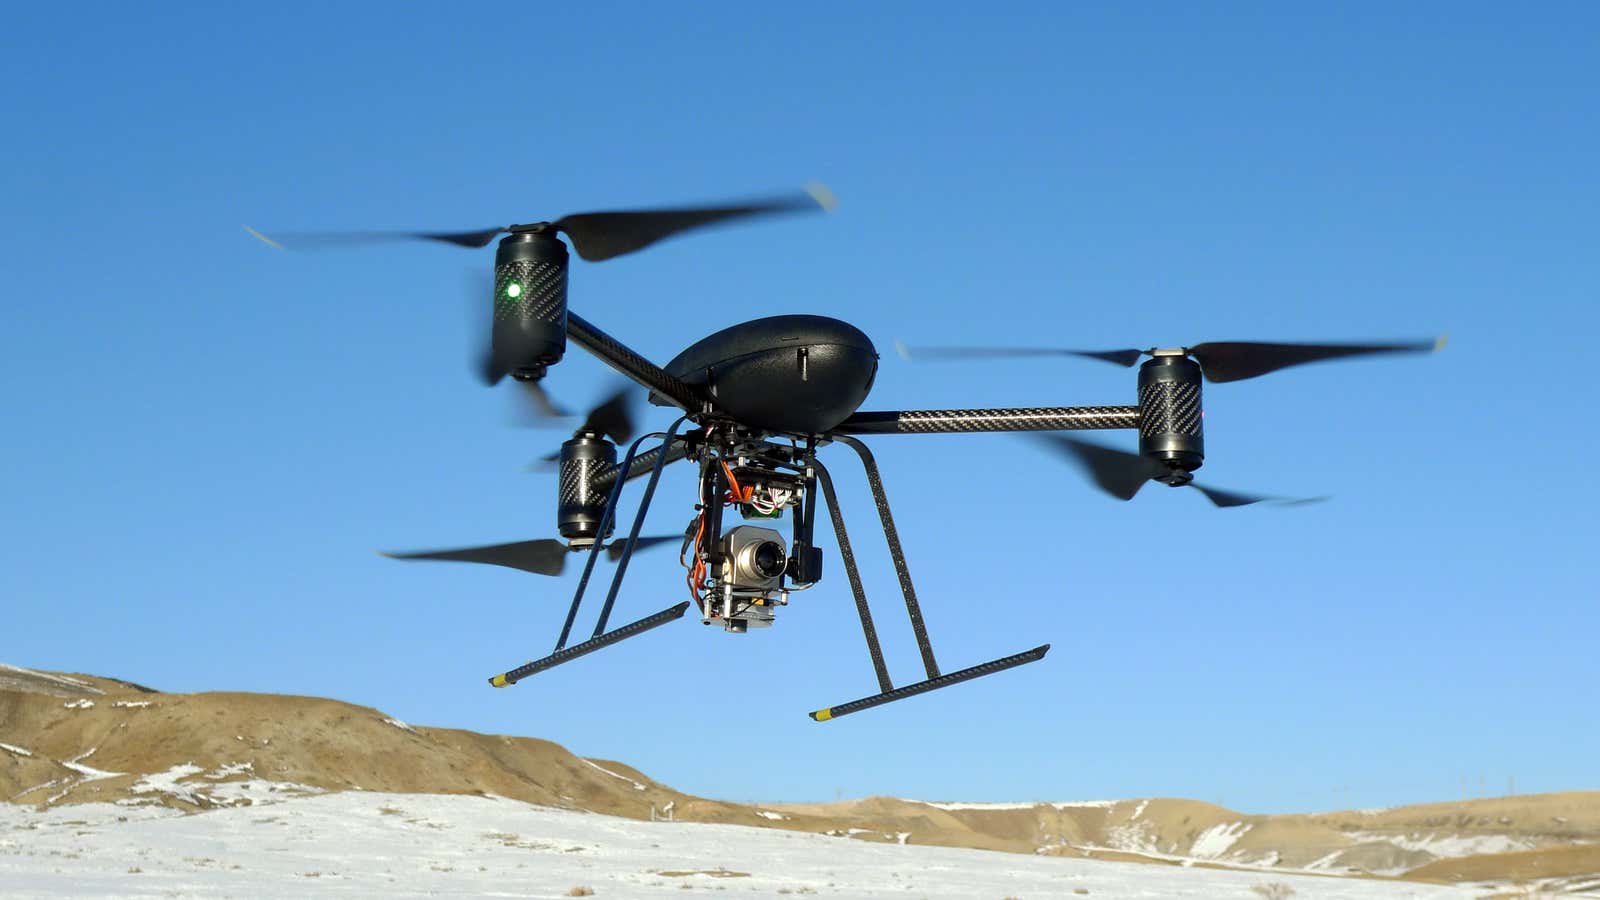 A non-Predator drone.